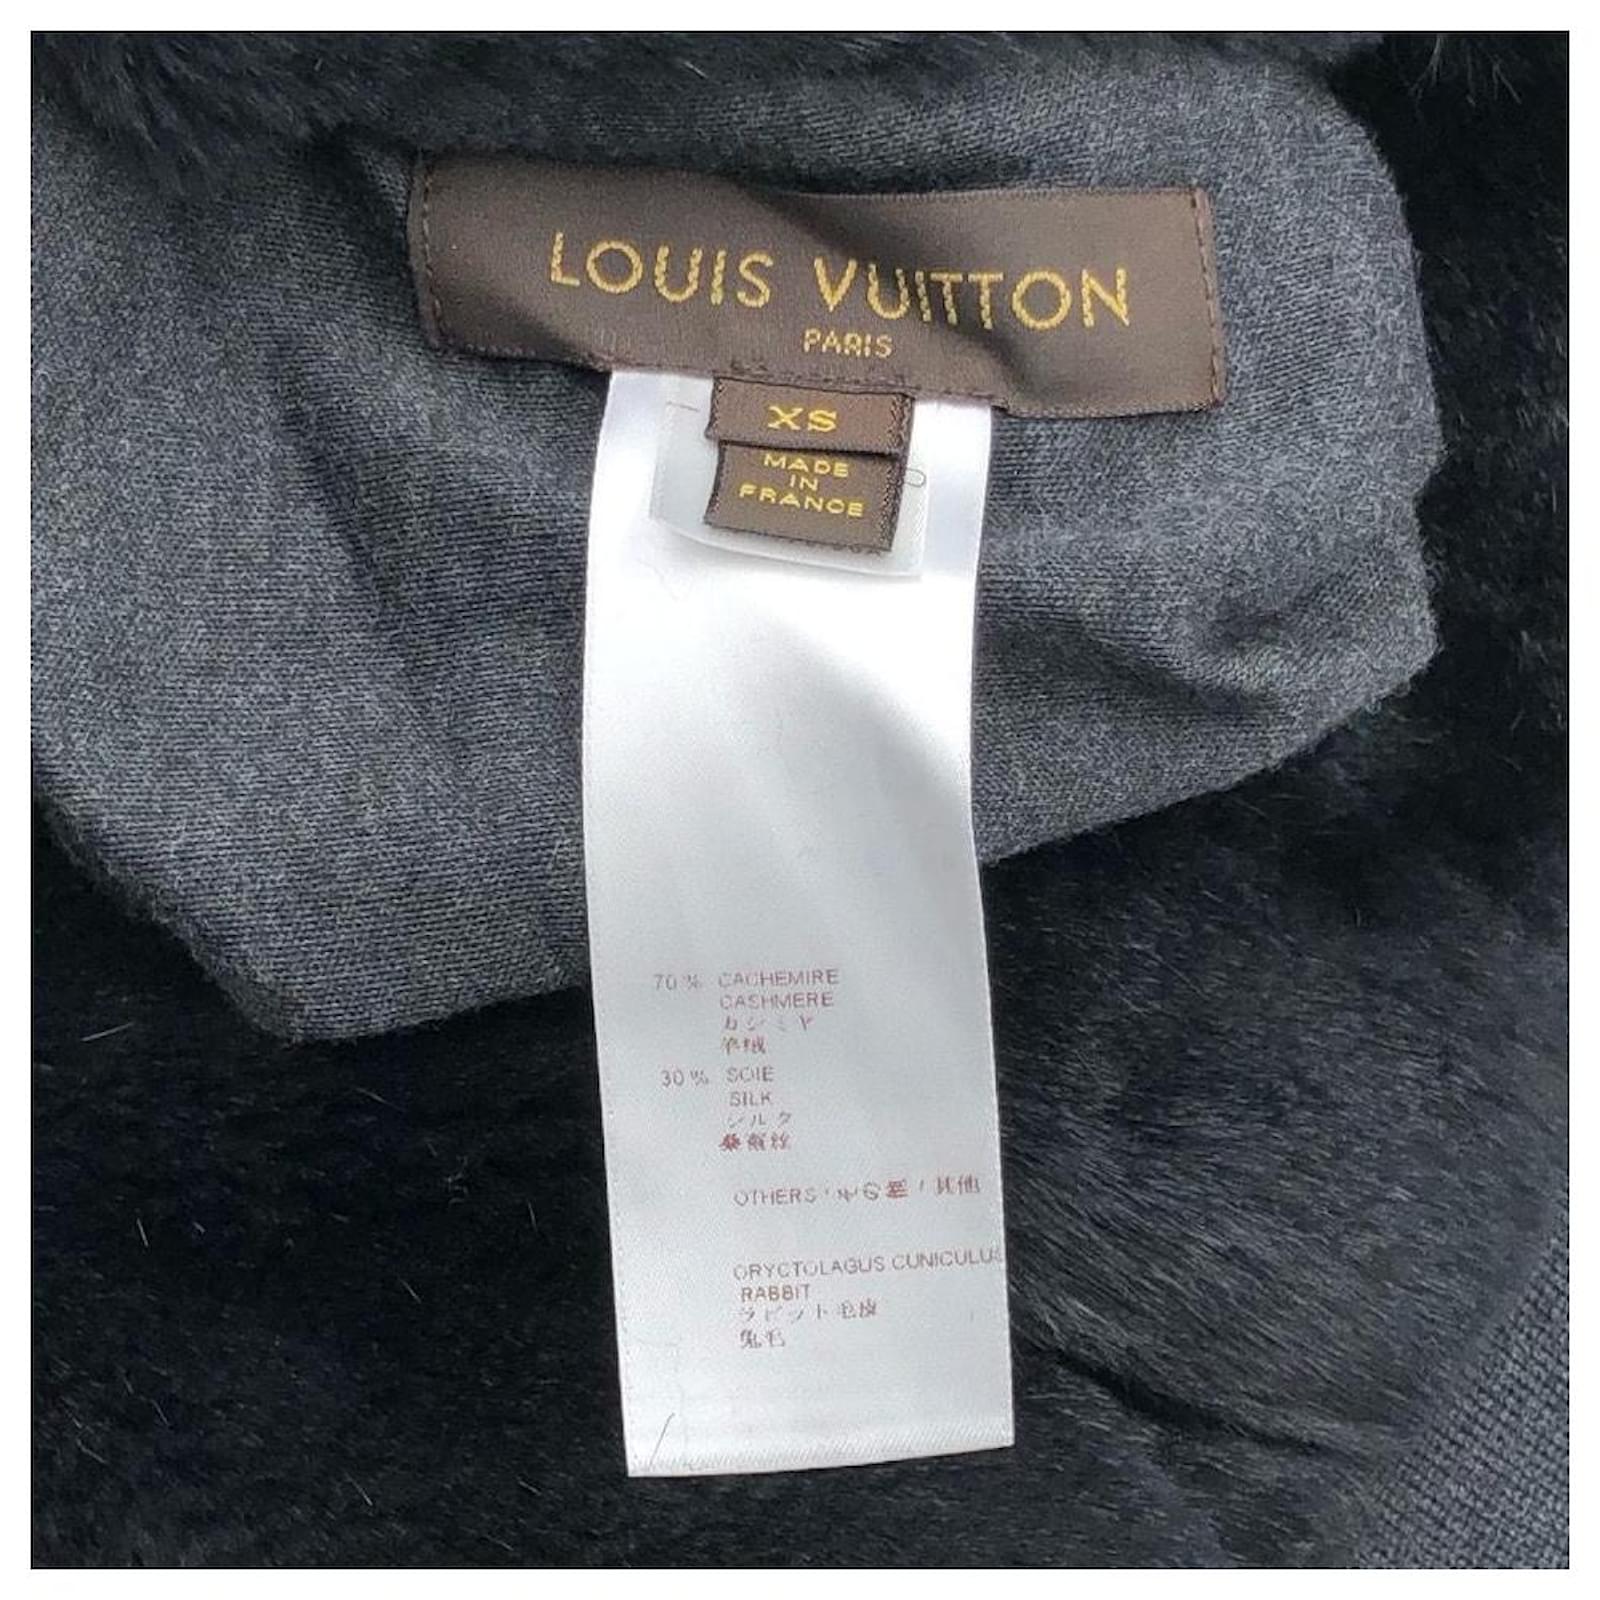 Sudadera capucha Louis Vuitton - Cukiss